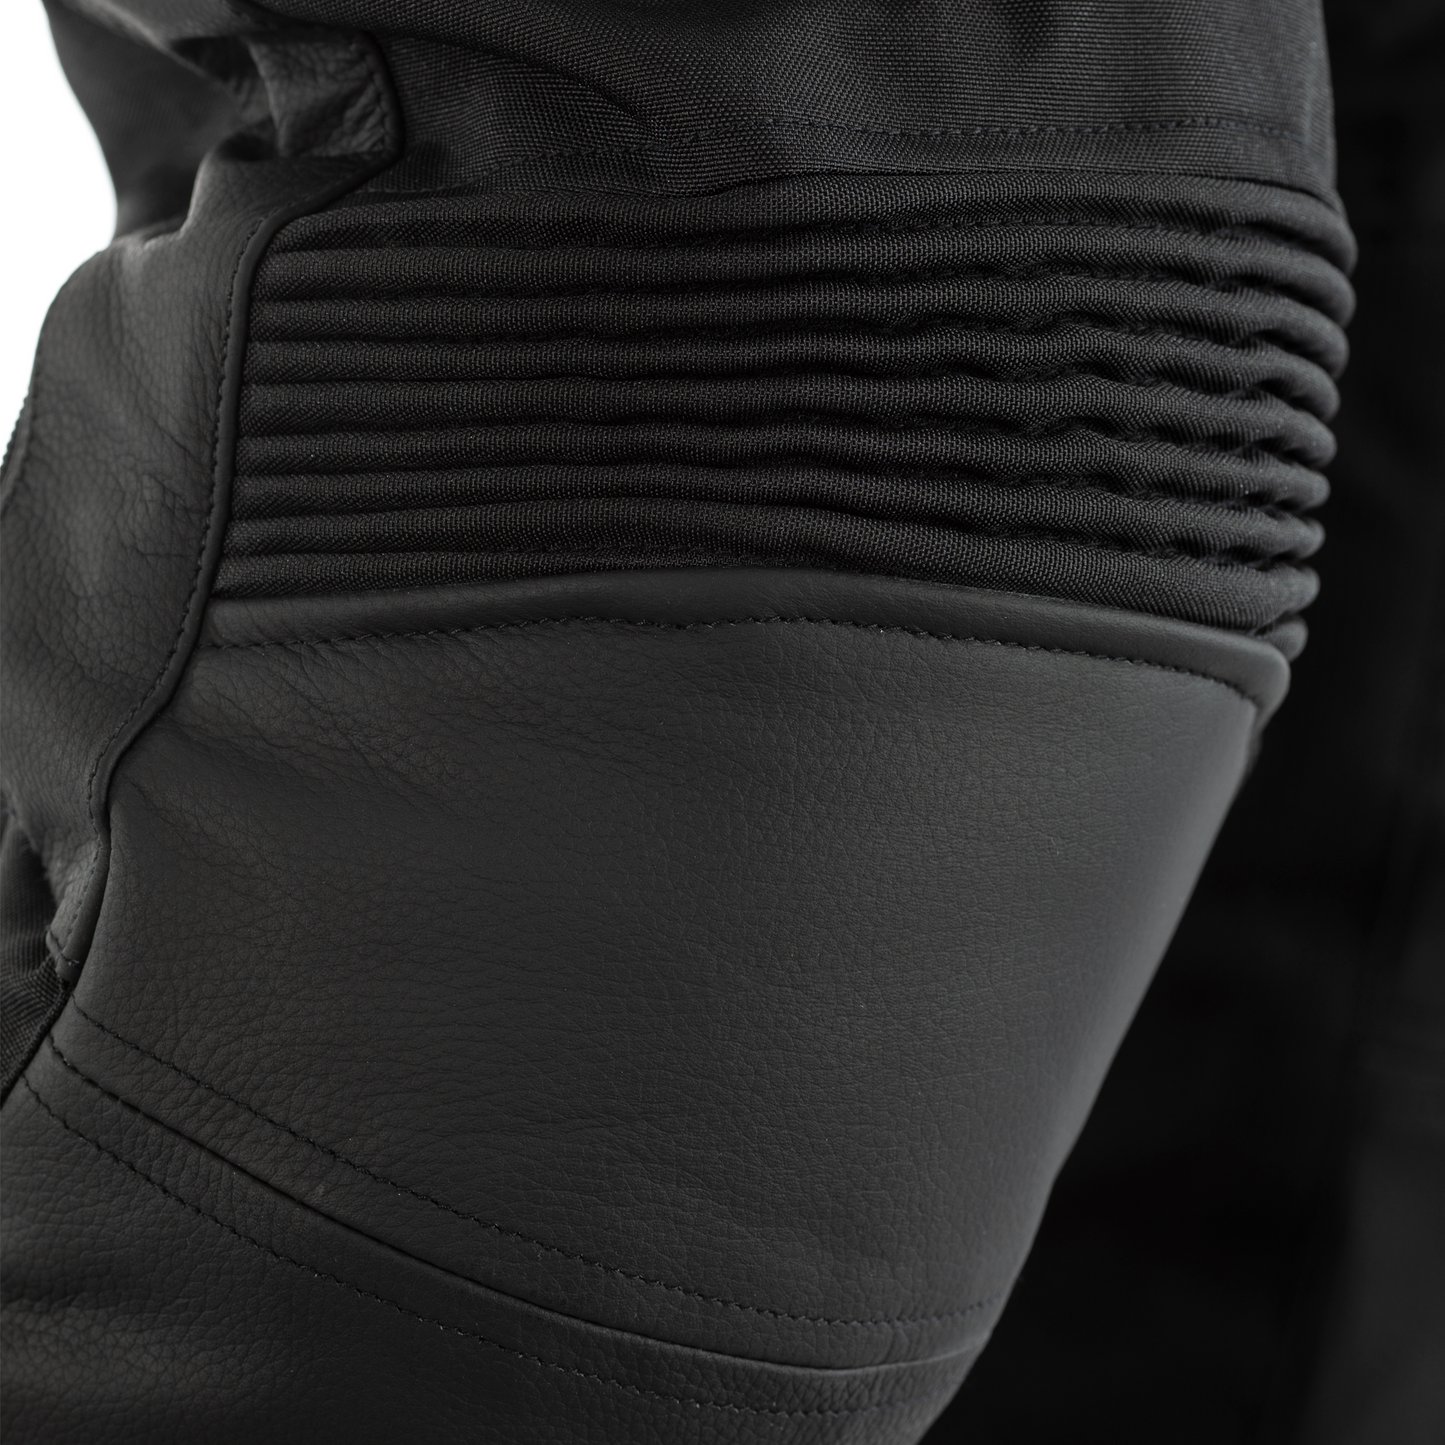 RST Syncro Plus (CE) Men's Textile Riding - Regular Length - Jeans - Black